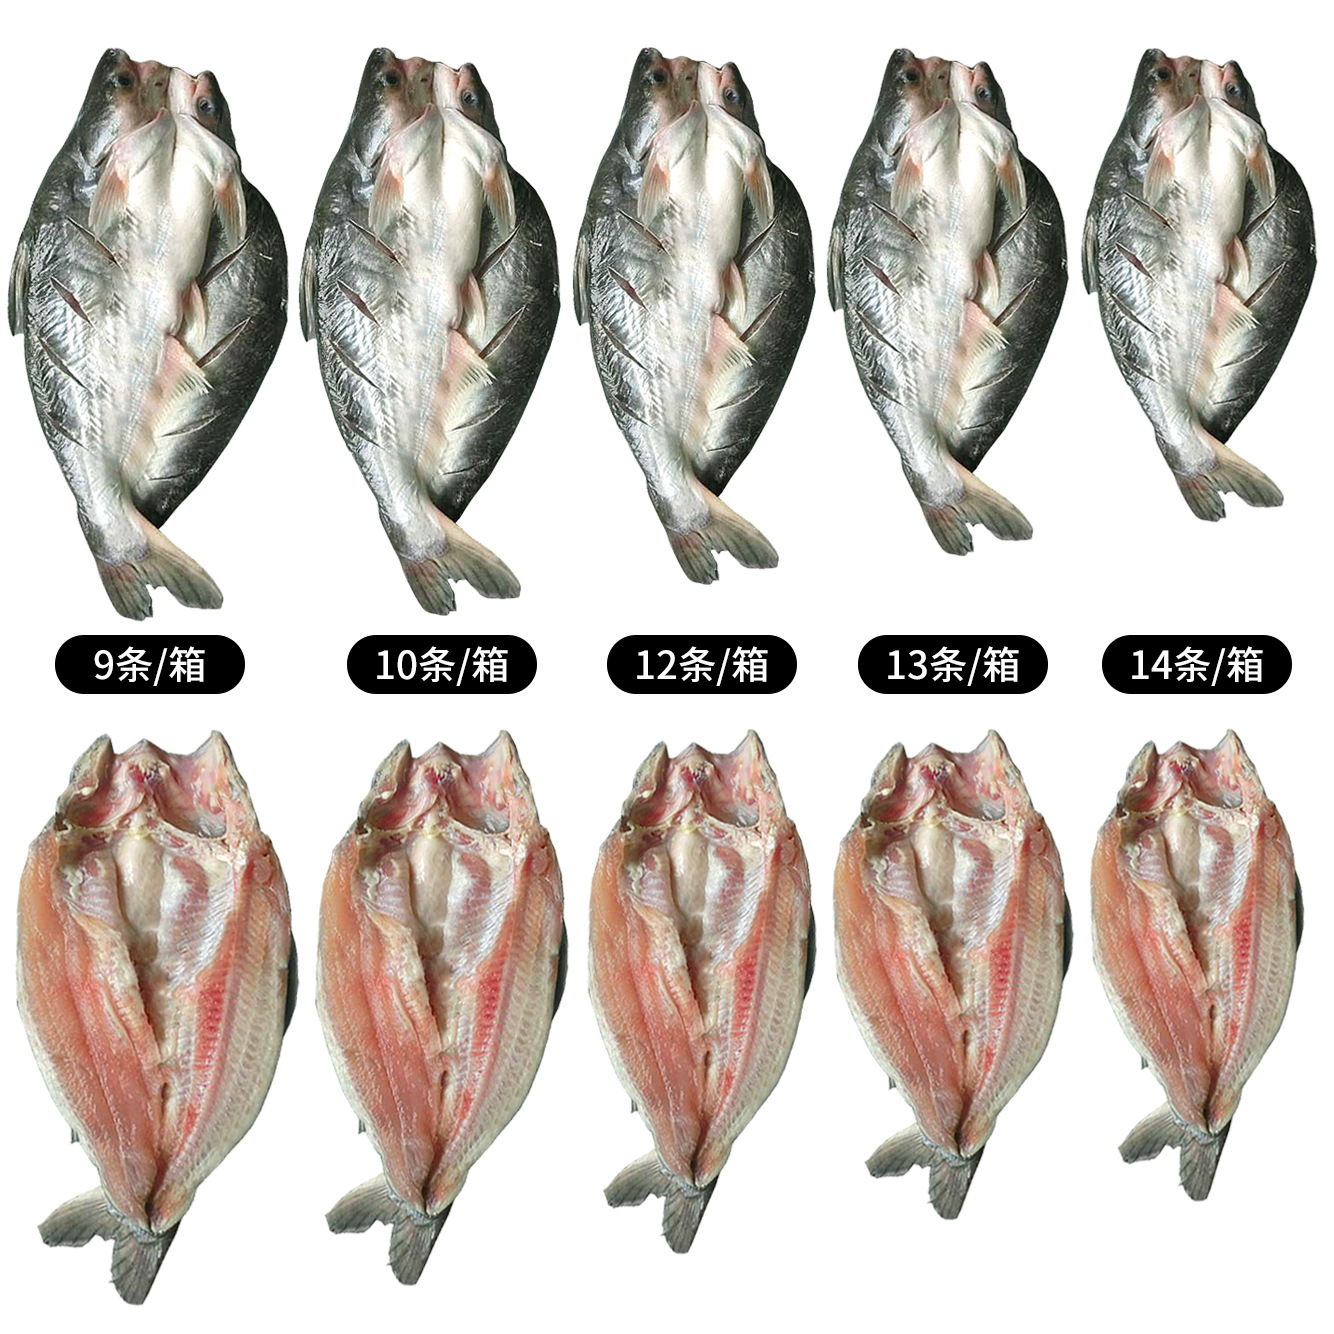 活冻开边 开背巴沙鱼 冷冻湄公鱼烤鱼用 凌波鱼巴沙鱼烤鱼10kg/件-阿里巴巴